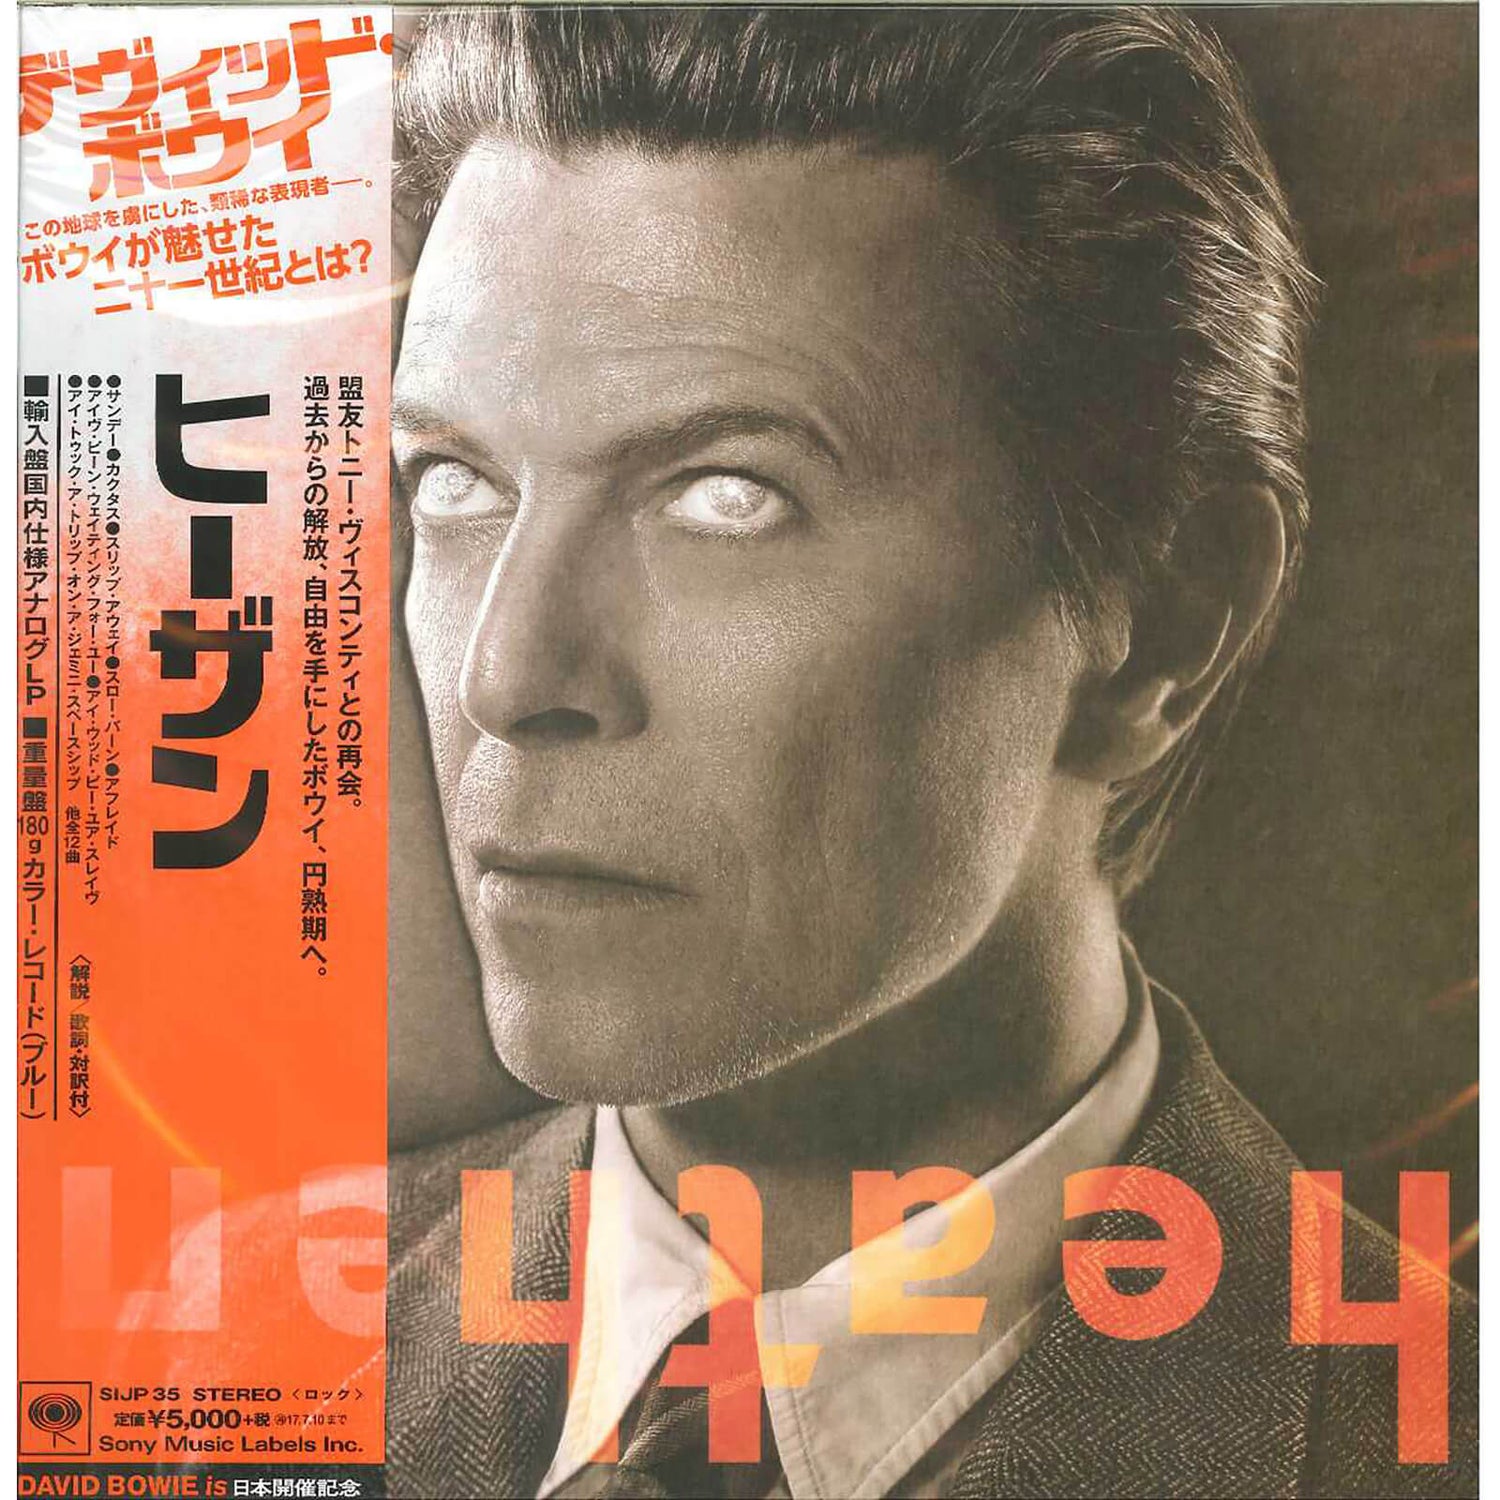 David Bowie - Heathen Vinyl Japanese Edition